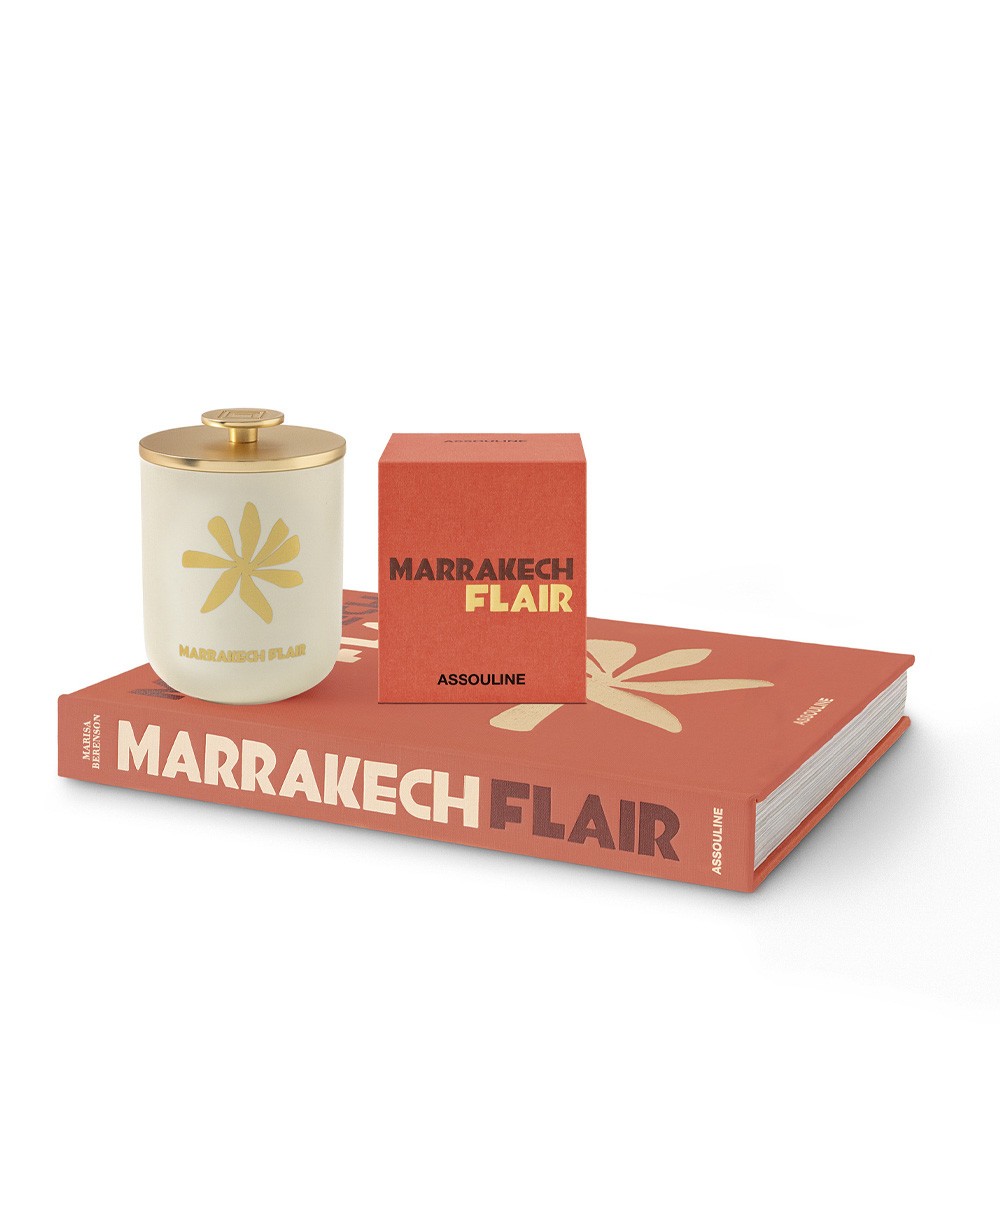 Dieses Bild zeigt das Produktbild der Travel from Home Candle Marrakech Flair von Assouline im RAUM concept store